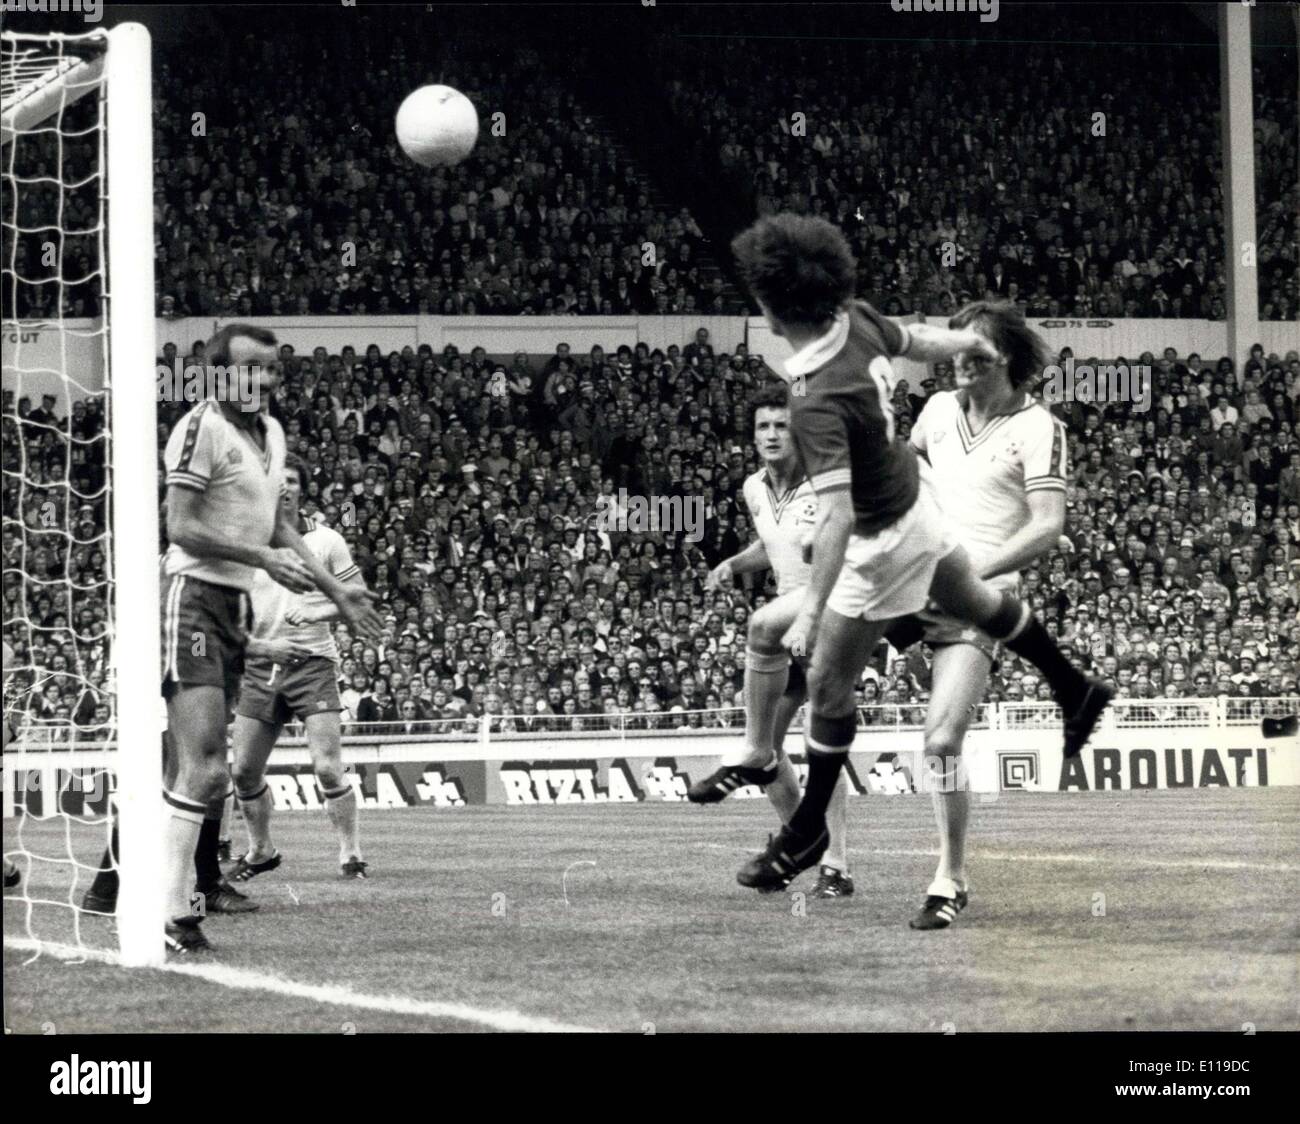 Maggio 01, 1976 - F.A. Per LA FINALE DI COPPA A WEMBLEY: mostra fotografica di Man Utd in avanti SA MMY McMilroy destra vola attraverso l'aria per la testa Foto Stock